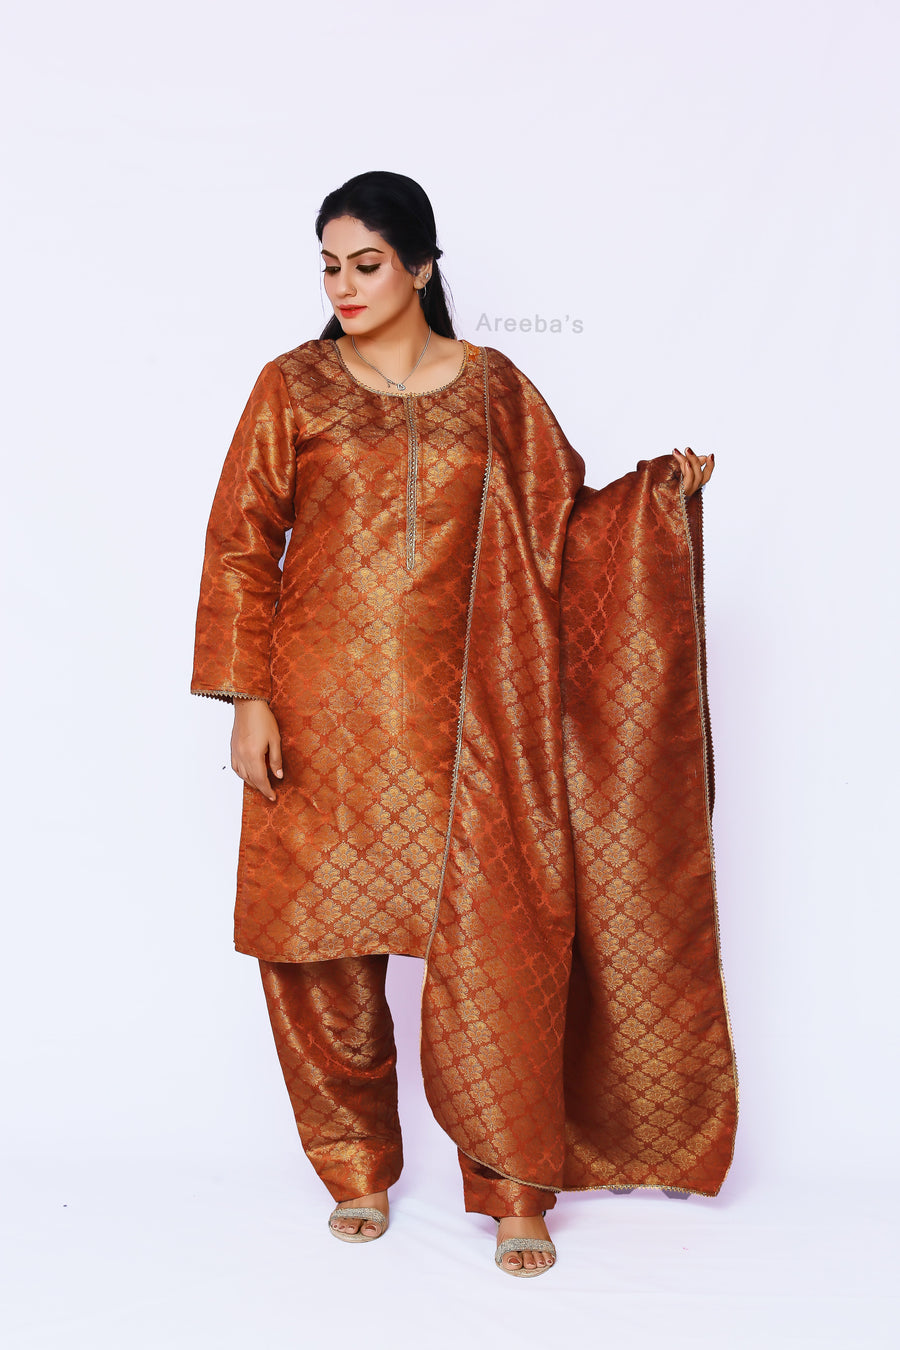 Copper Canyon Banarasi shalwar kameez- Areeba's Couture